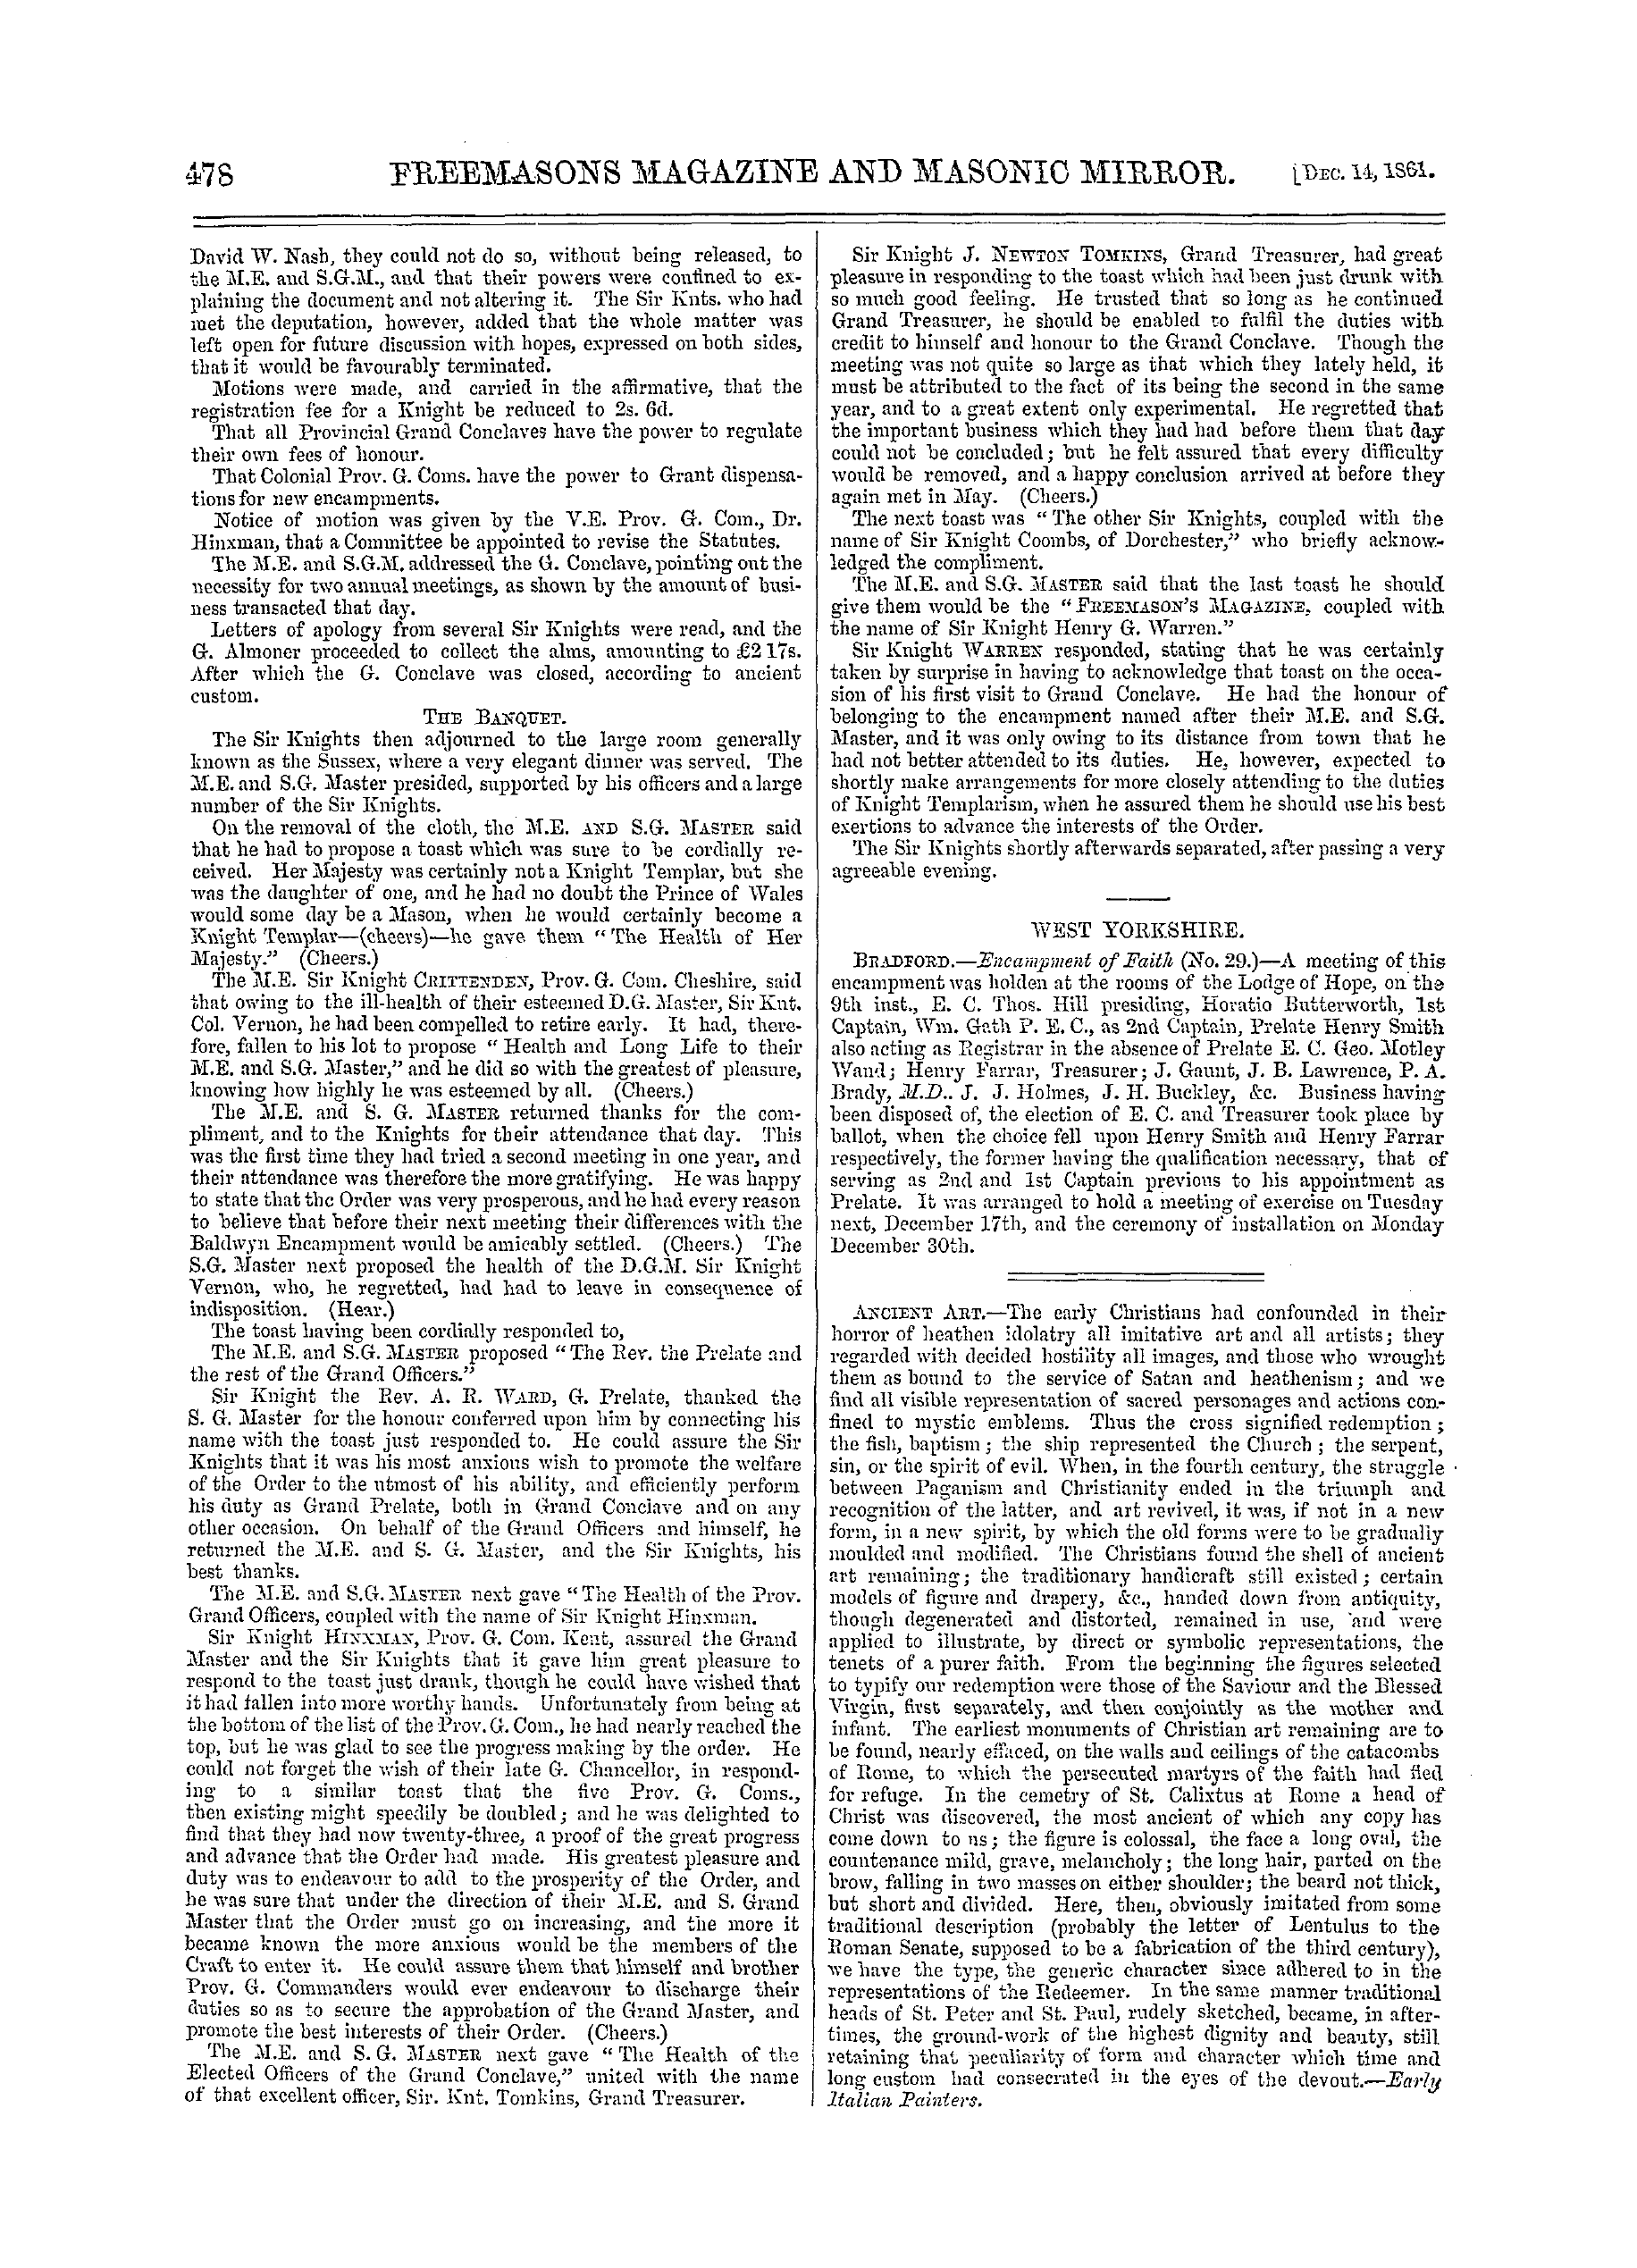 The Freemasons' Monthly Magazine: 1861-12-14: 18